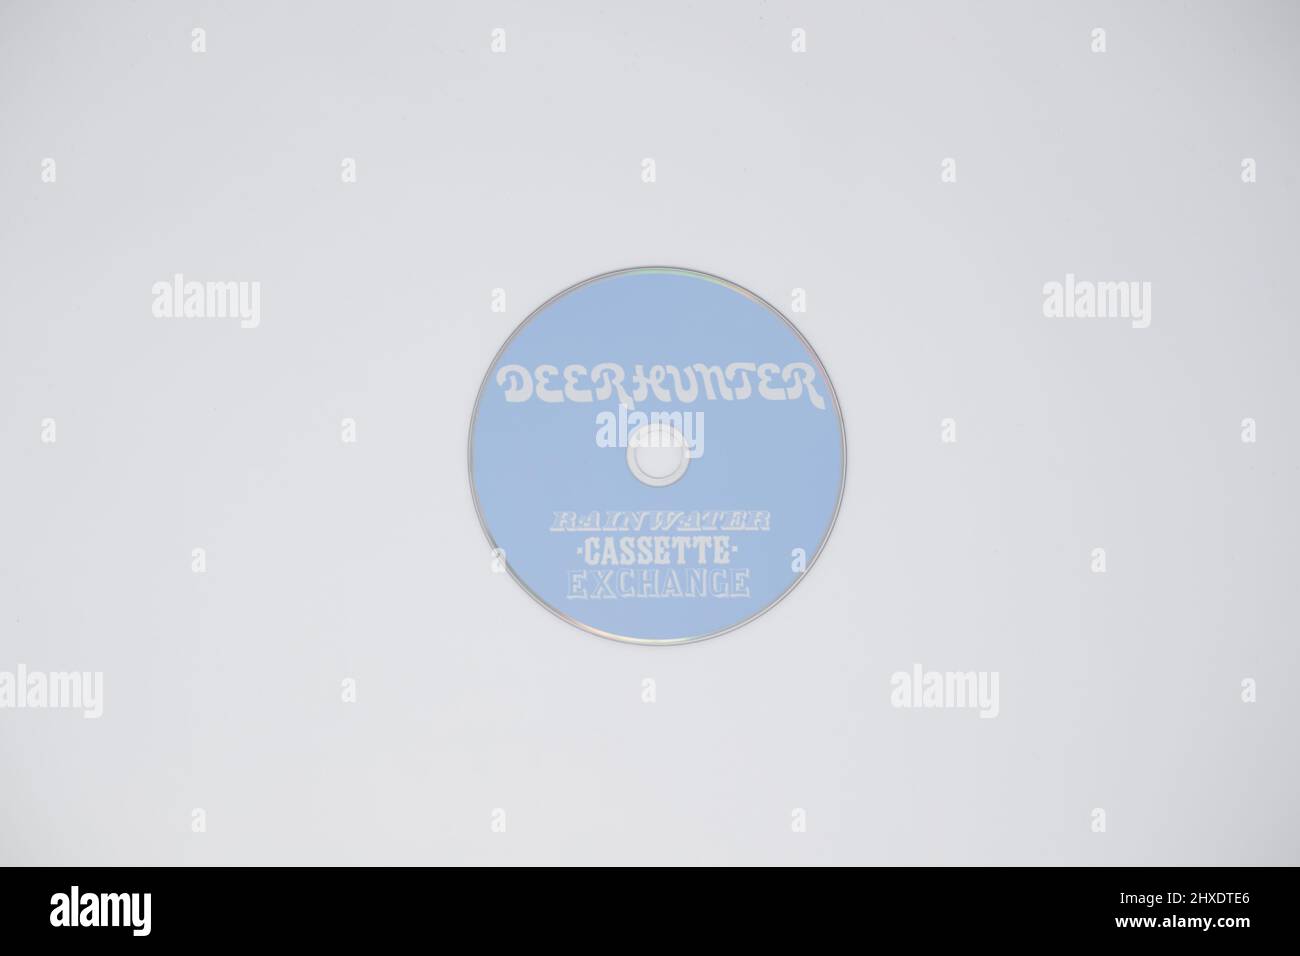 DeerHunter - Rainwater Cassette Exchange album CD on white background Stock Photo